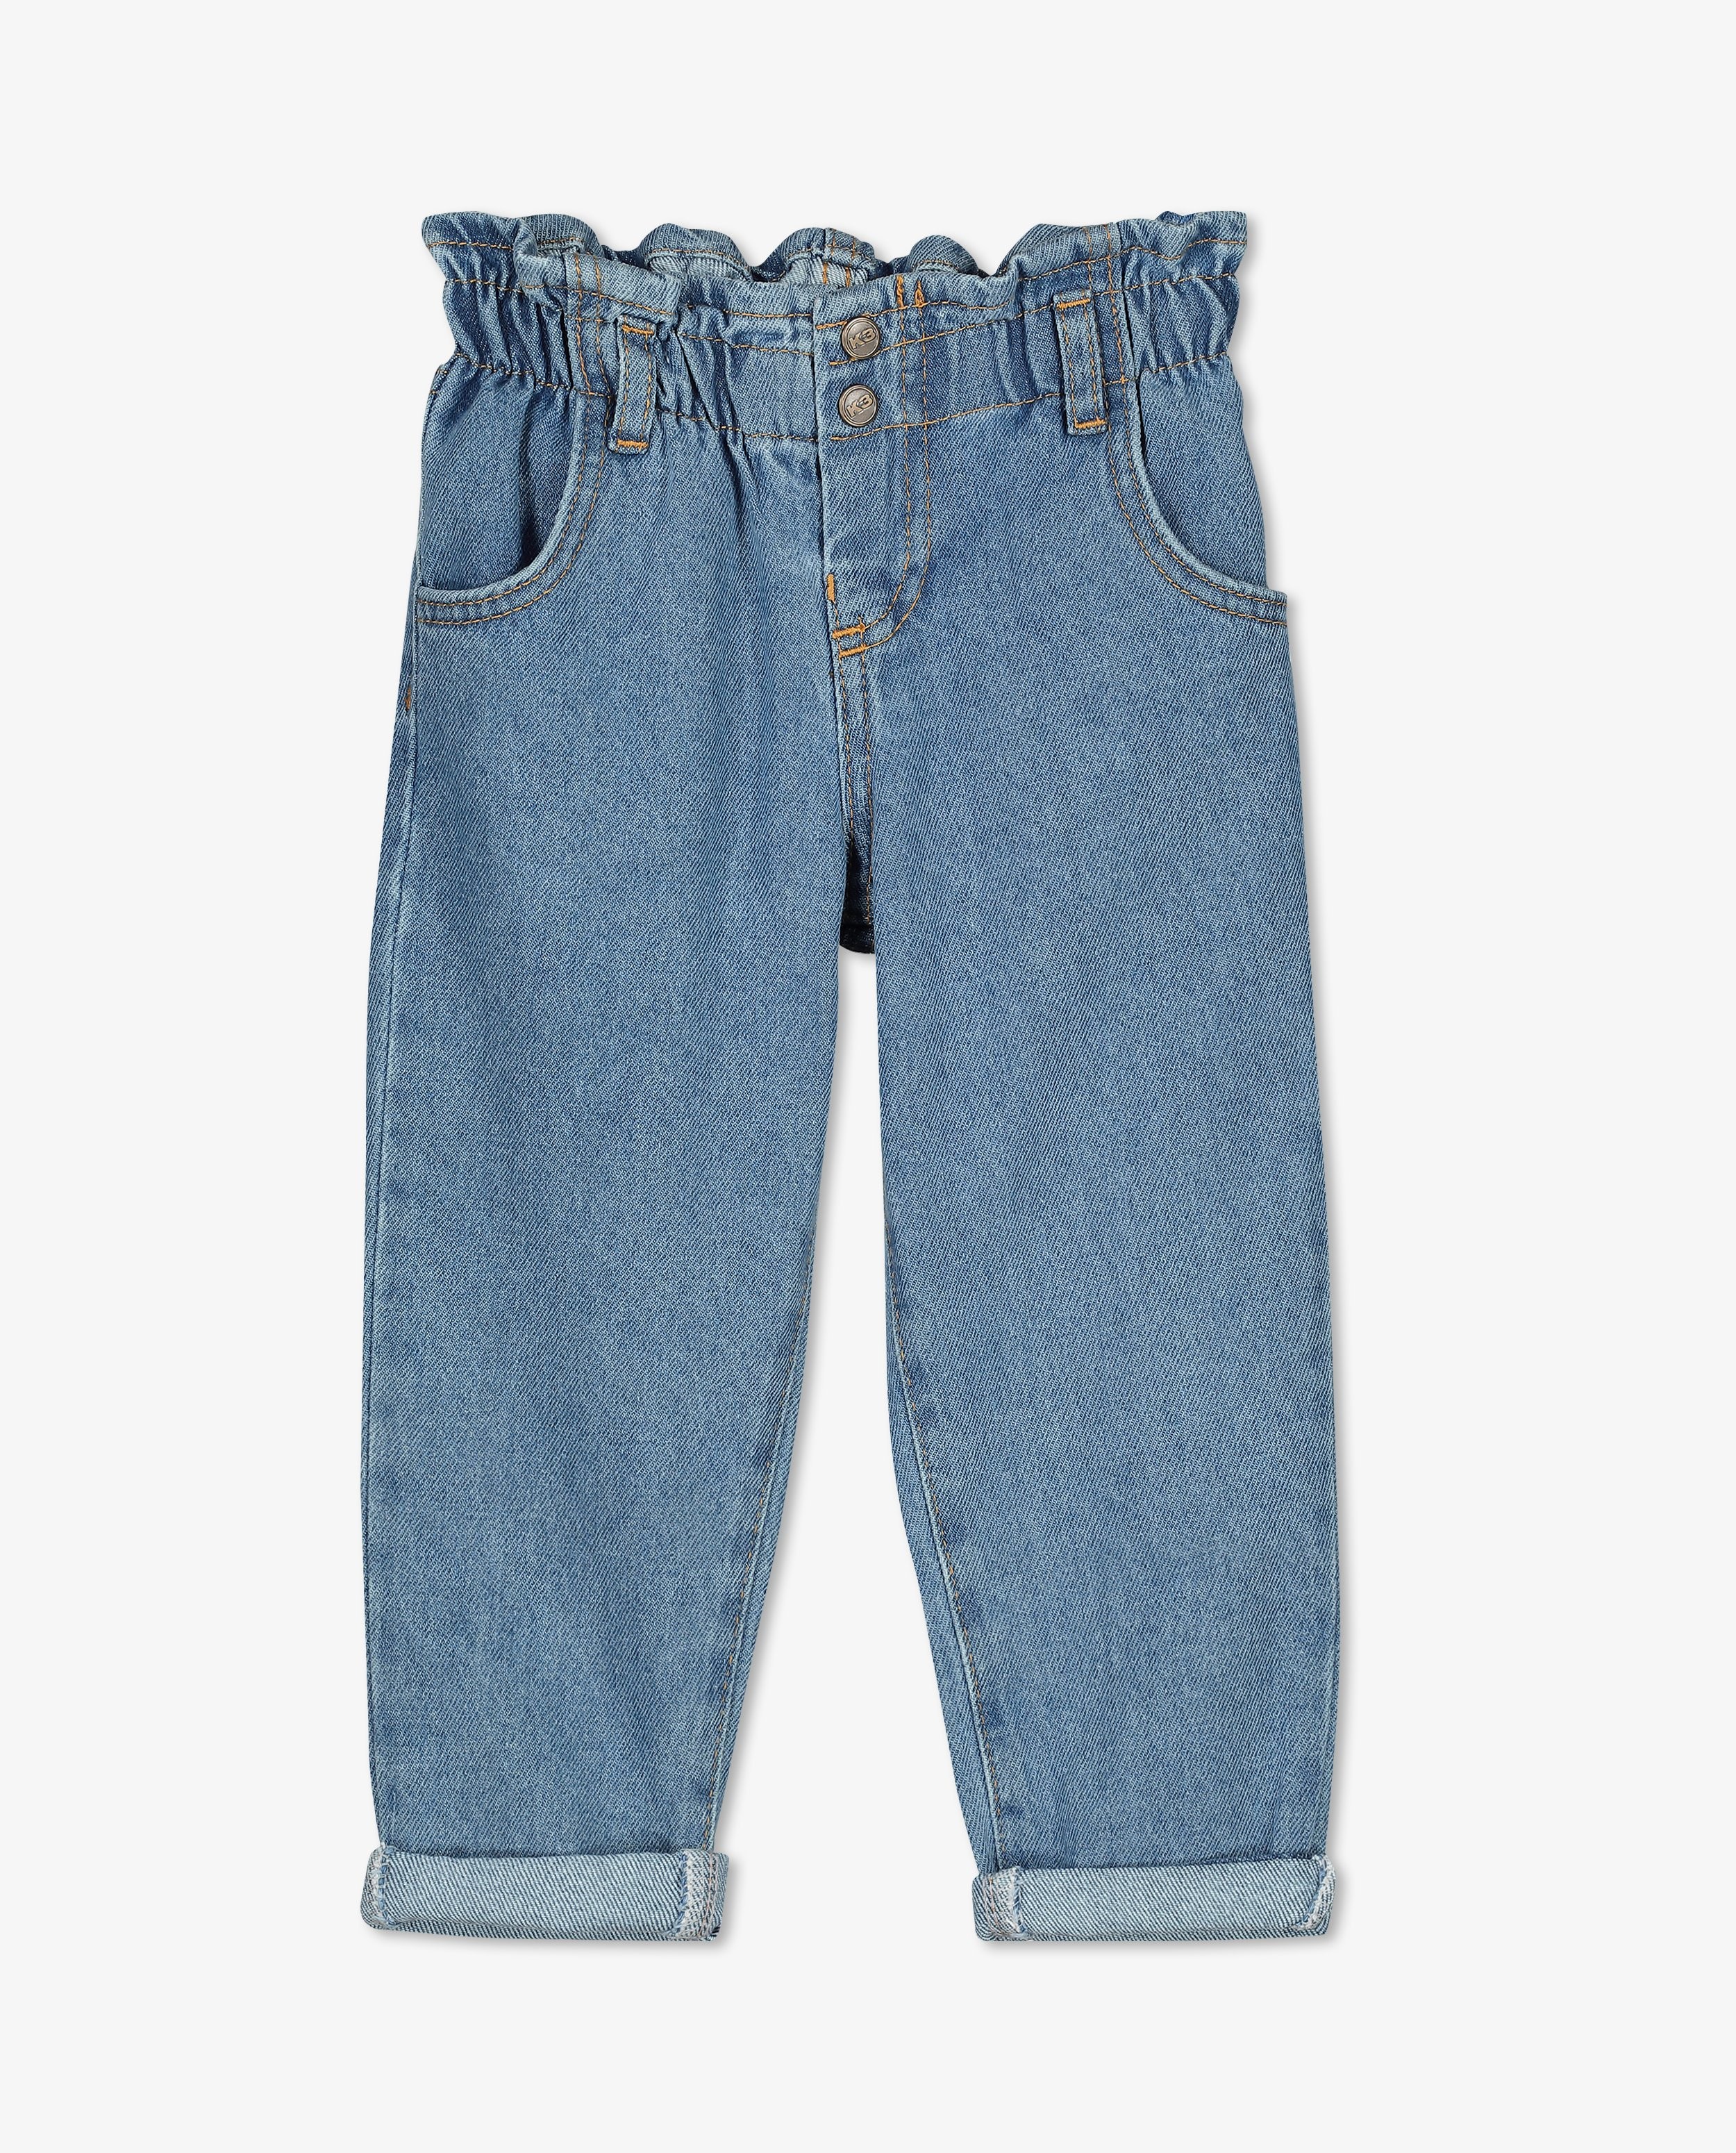 Jeans - Blauwe jeansbroek met slouchy fit